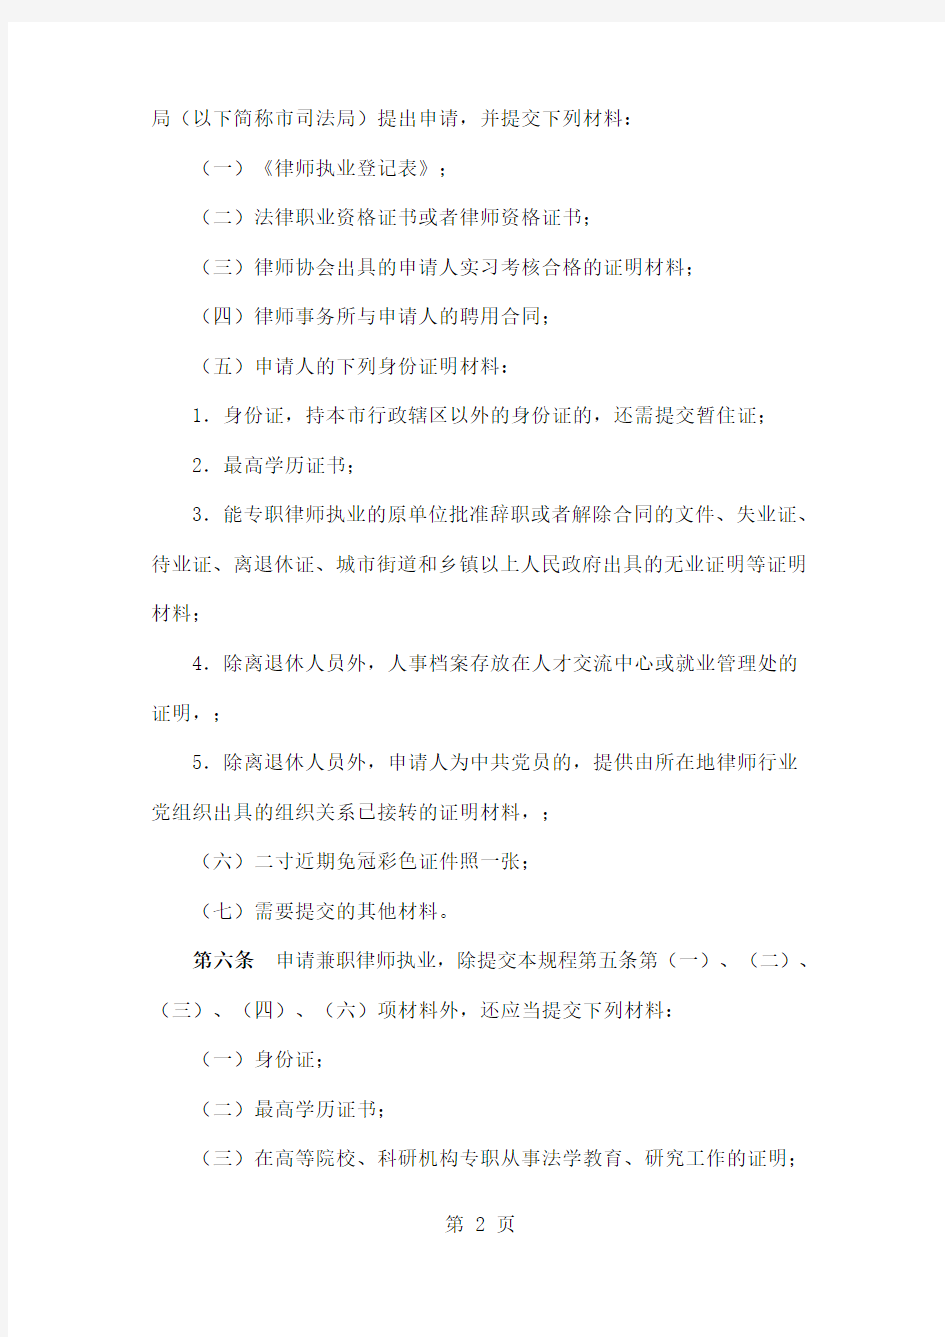 浙江省律师执业行政许可操作规程-21页文档资料